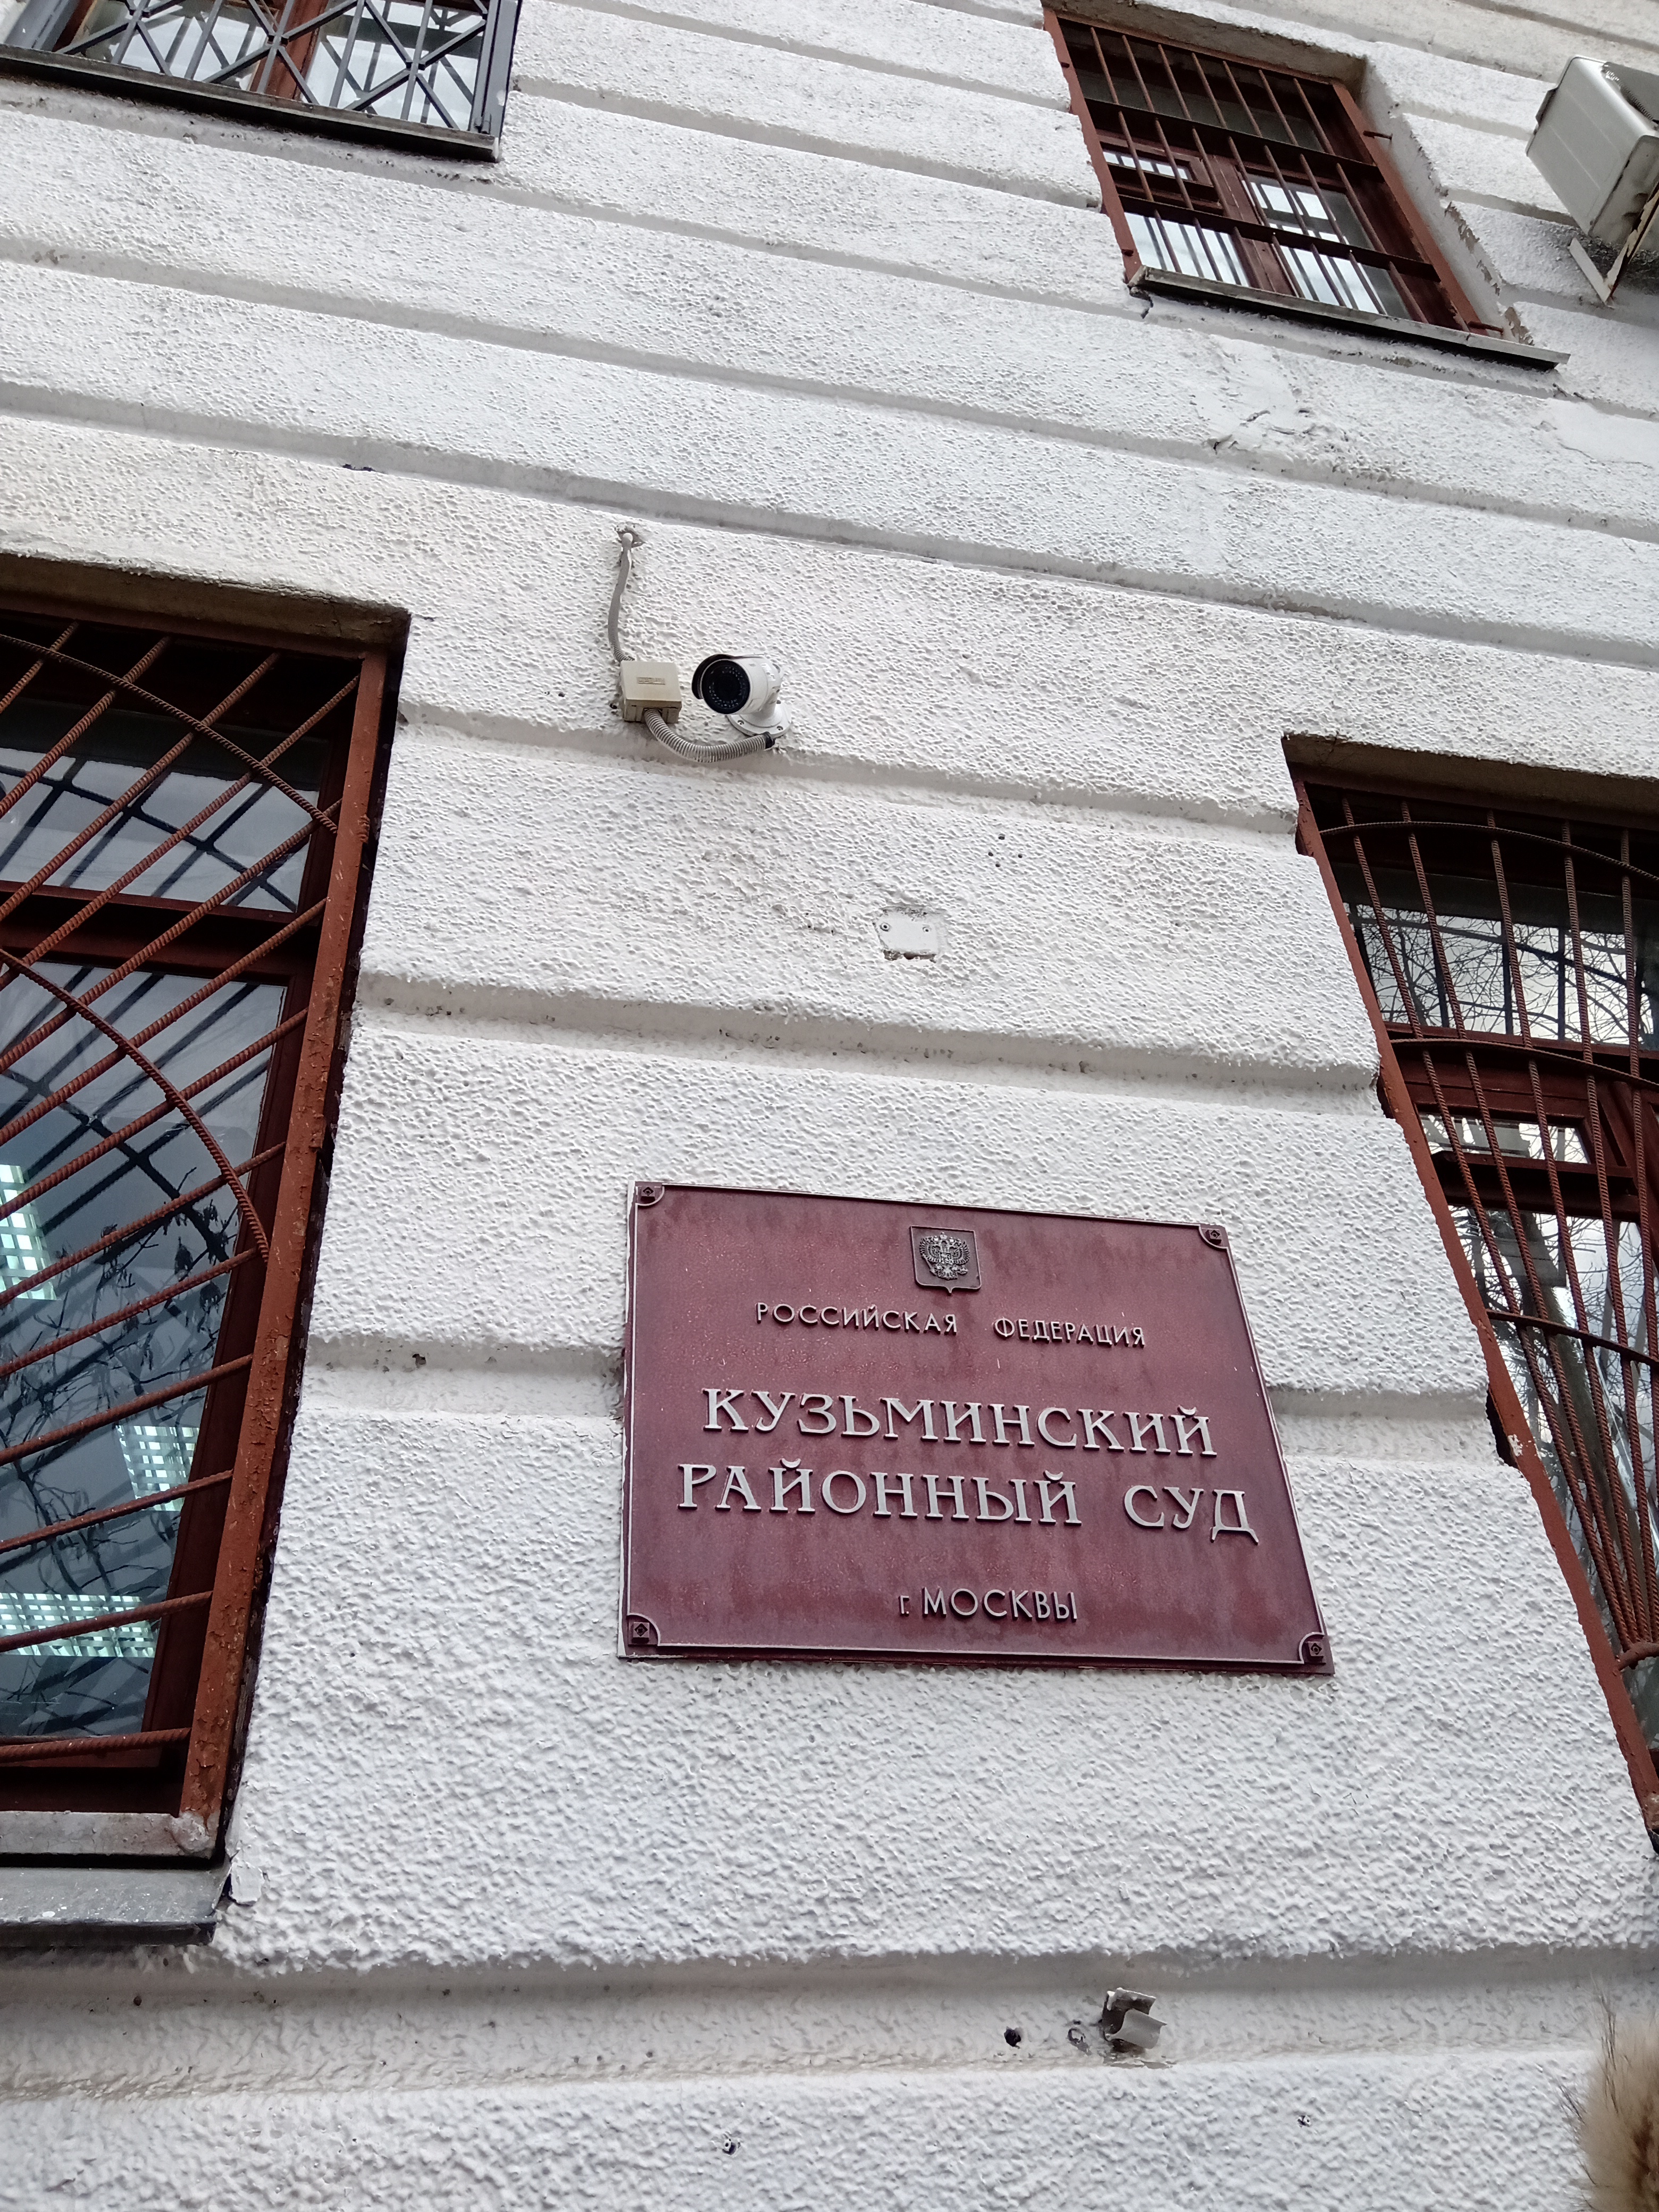 Нагатинский районный суд г. Москвы принял обеспечительные меры по корпоративному спору